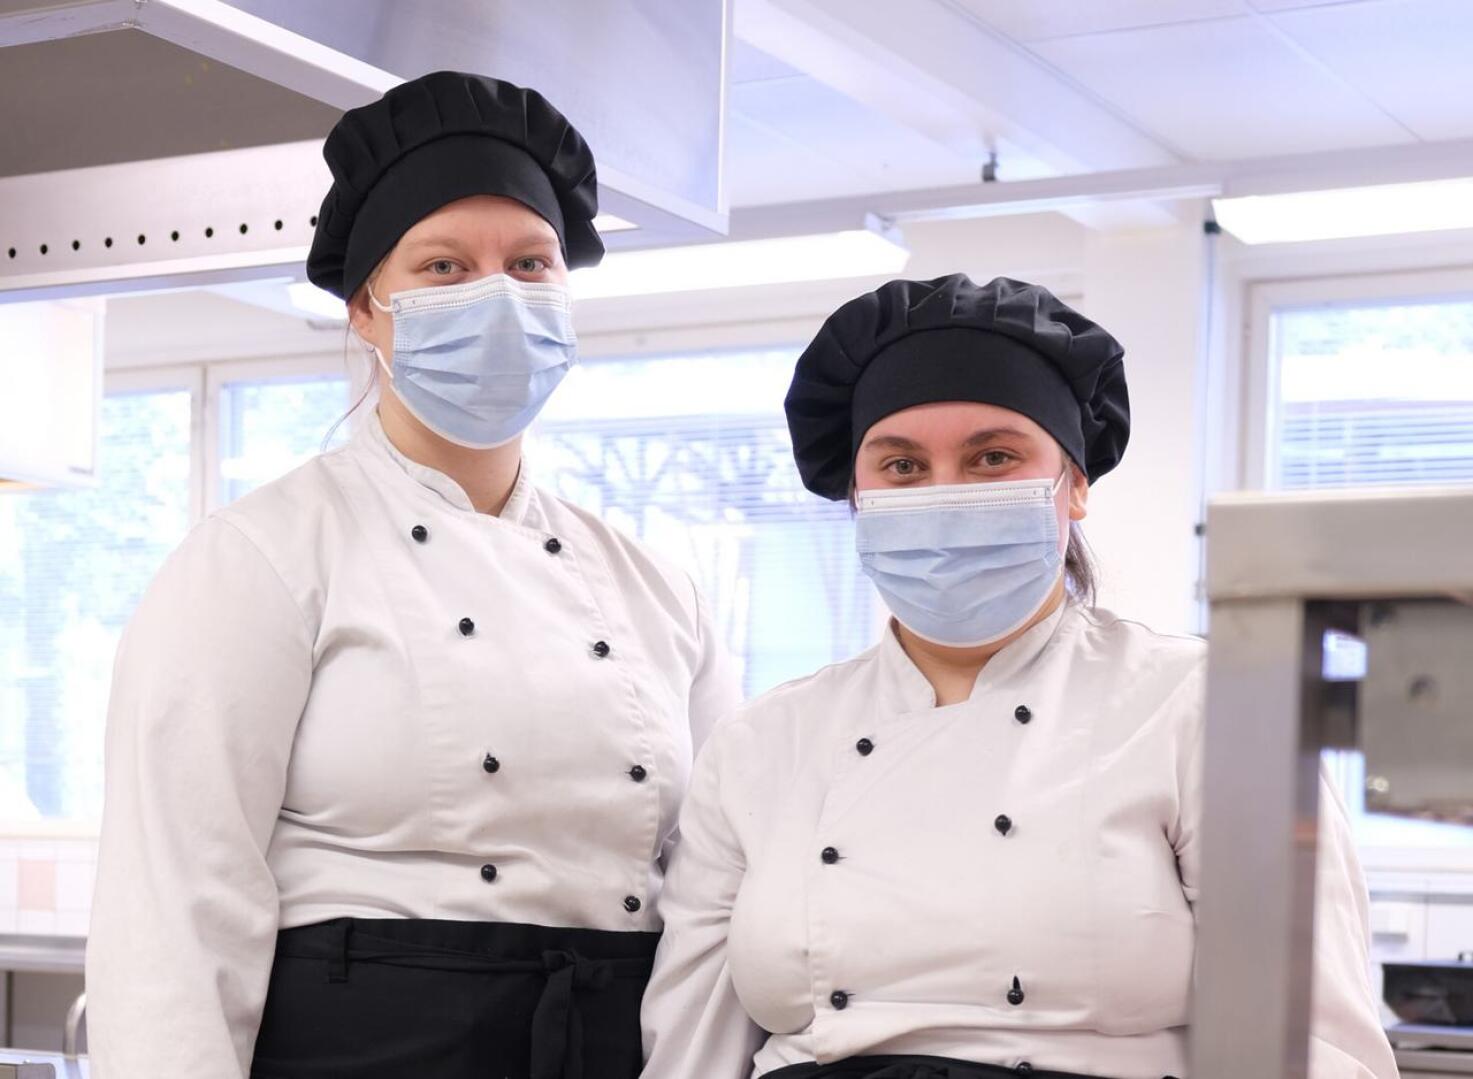 Ravintola-catering-palveluiden hopeamitalistit Janette Kahelin ja Jennamiia Arvola opiskelevat kokiksi Jedun Haapaveden yksikössä.